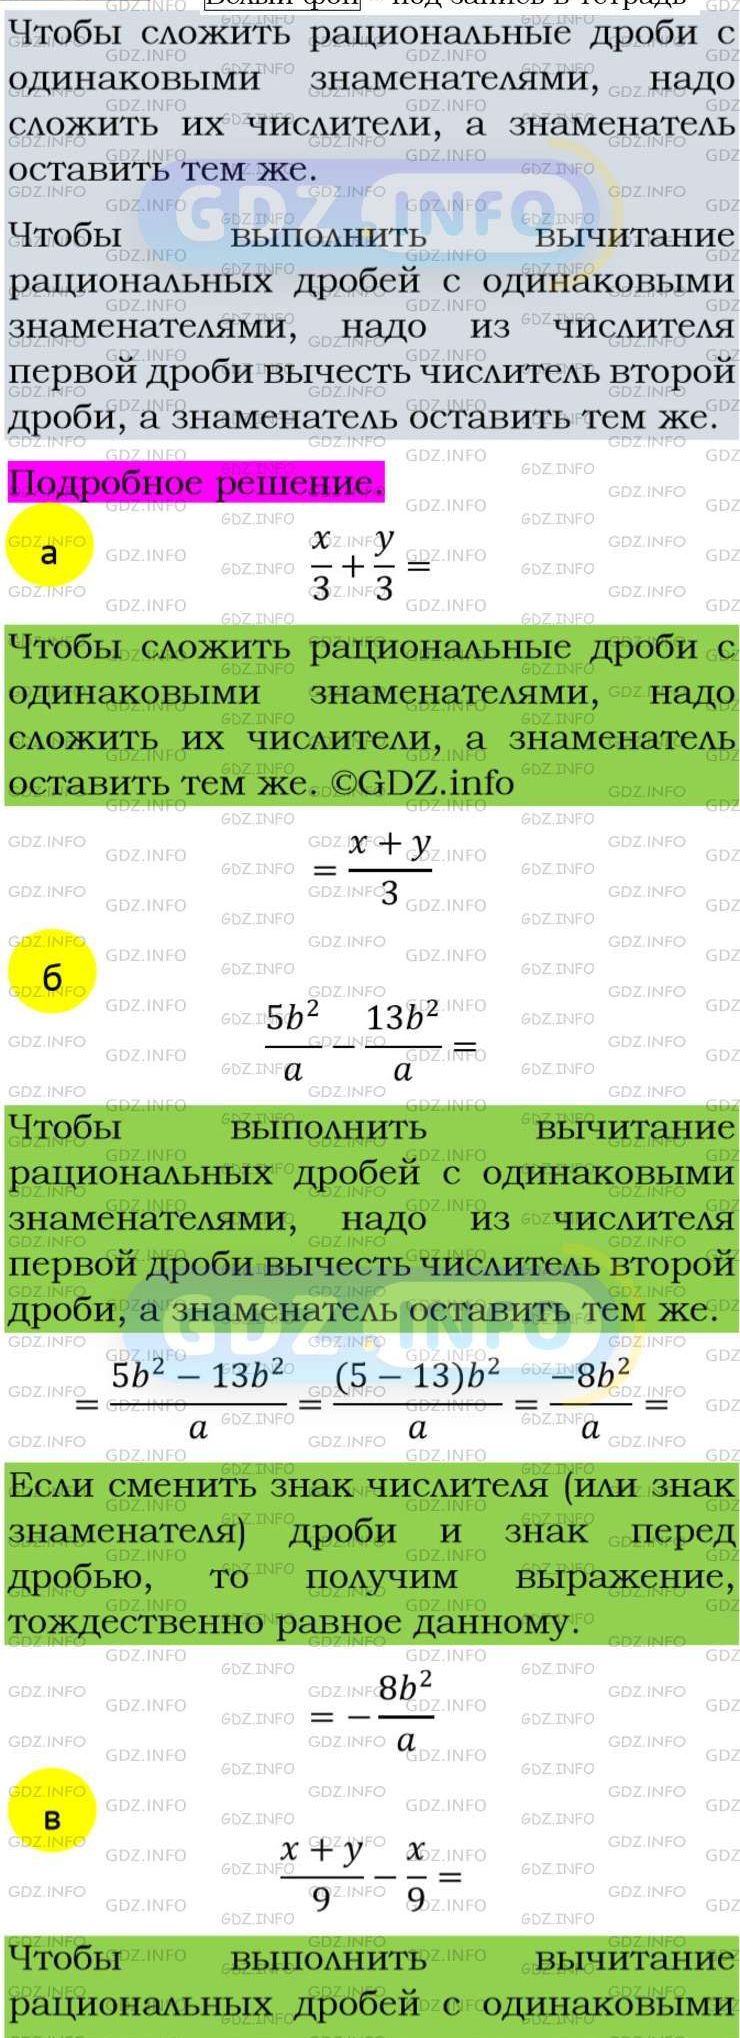 Фото подробного решения: Номер задания №55 из ГДЗ по Алгебре 8 класс: Макарычев Ю.Н.